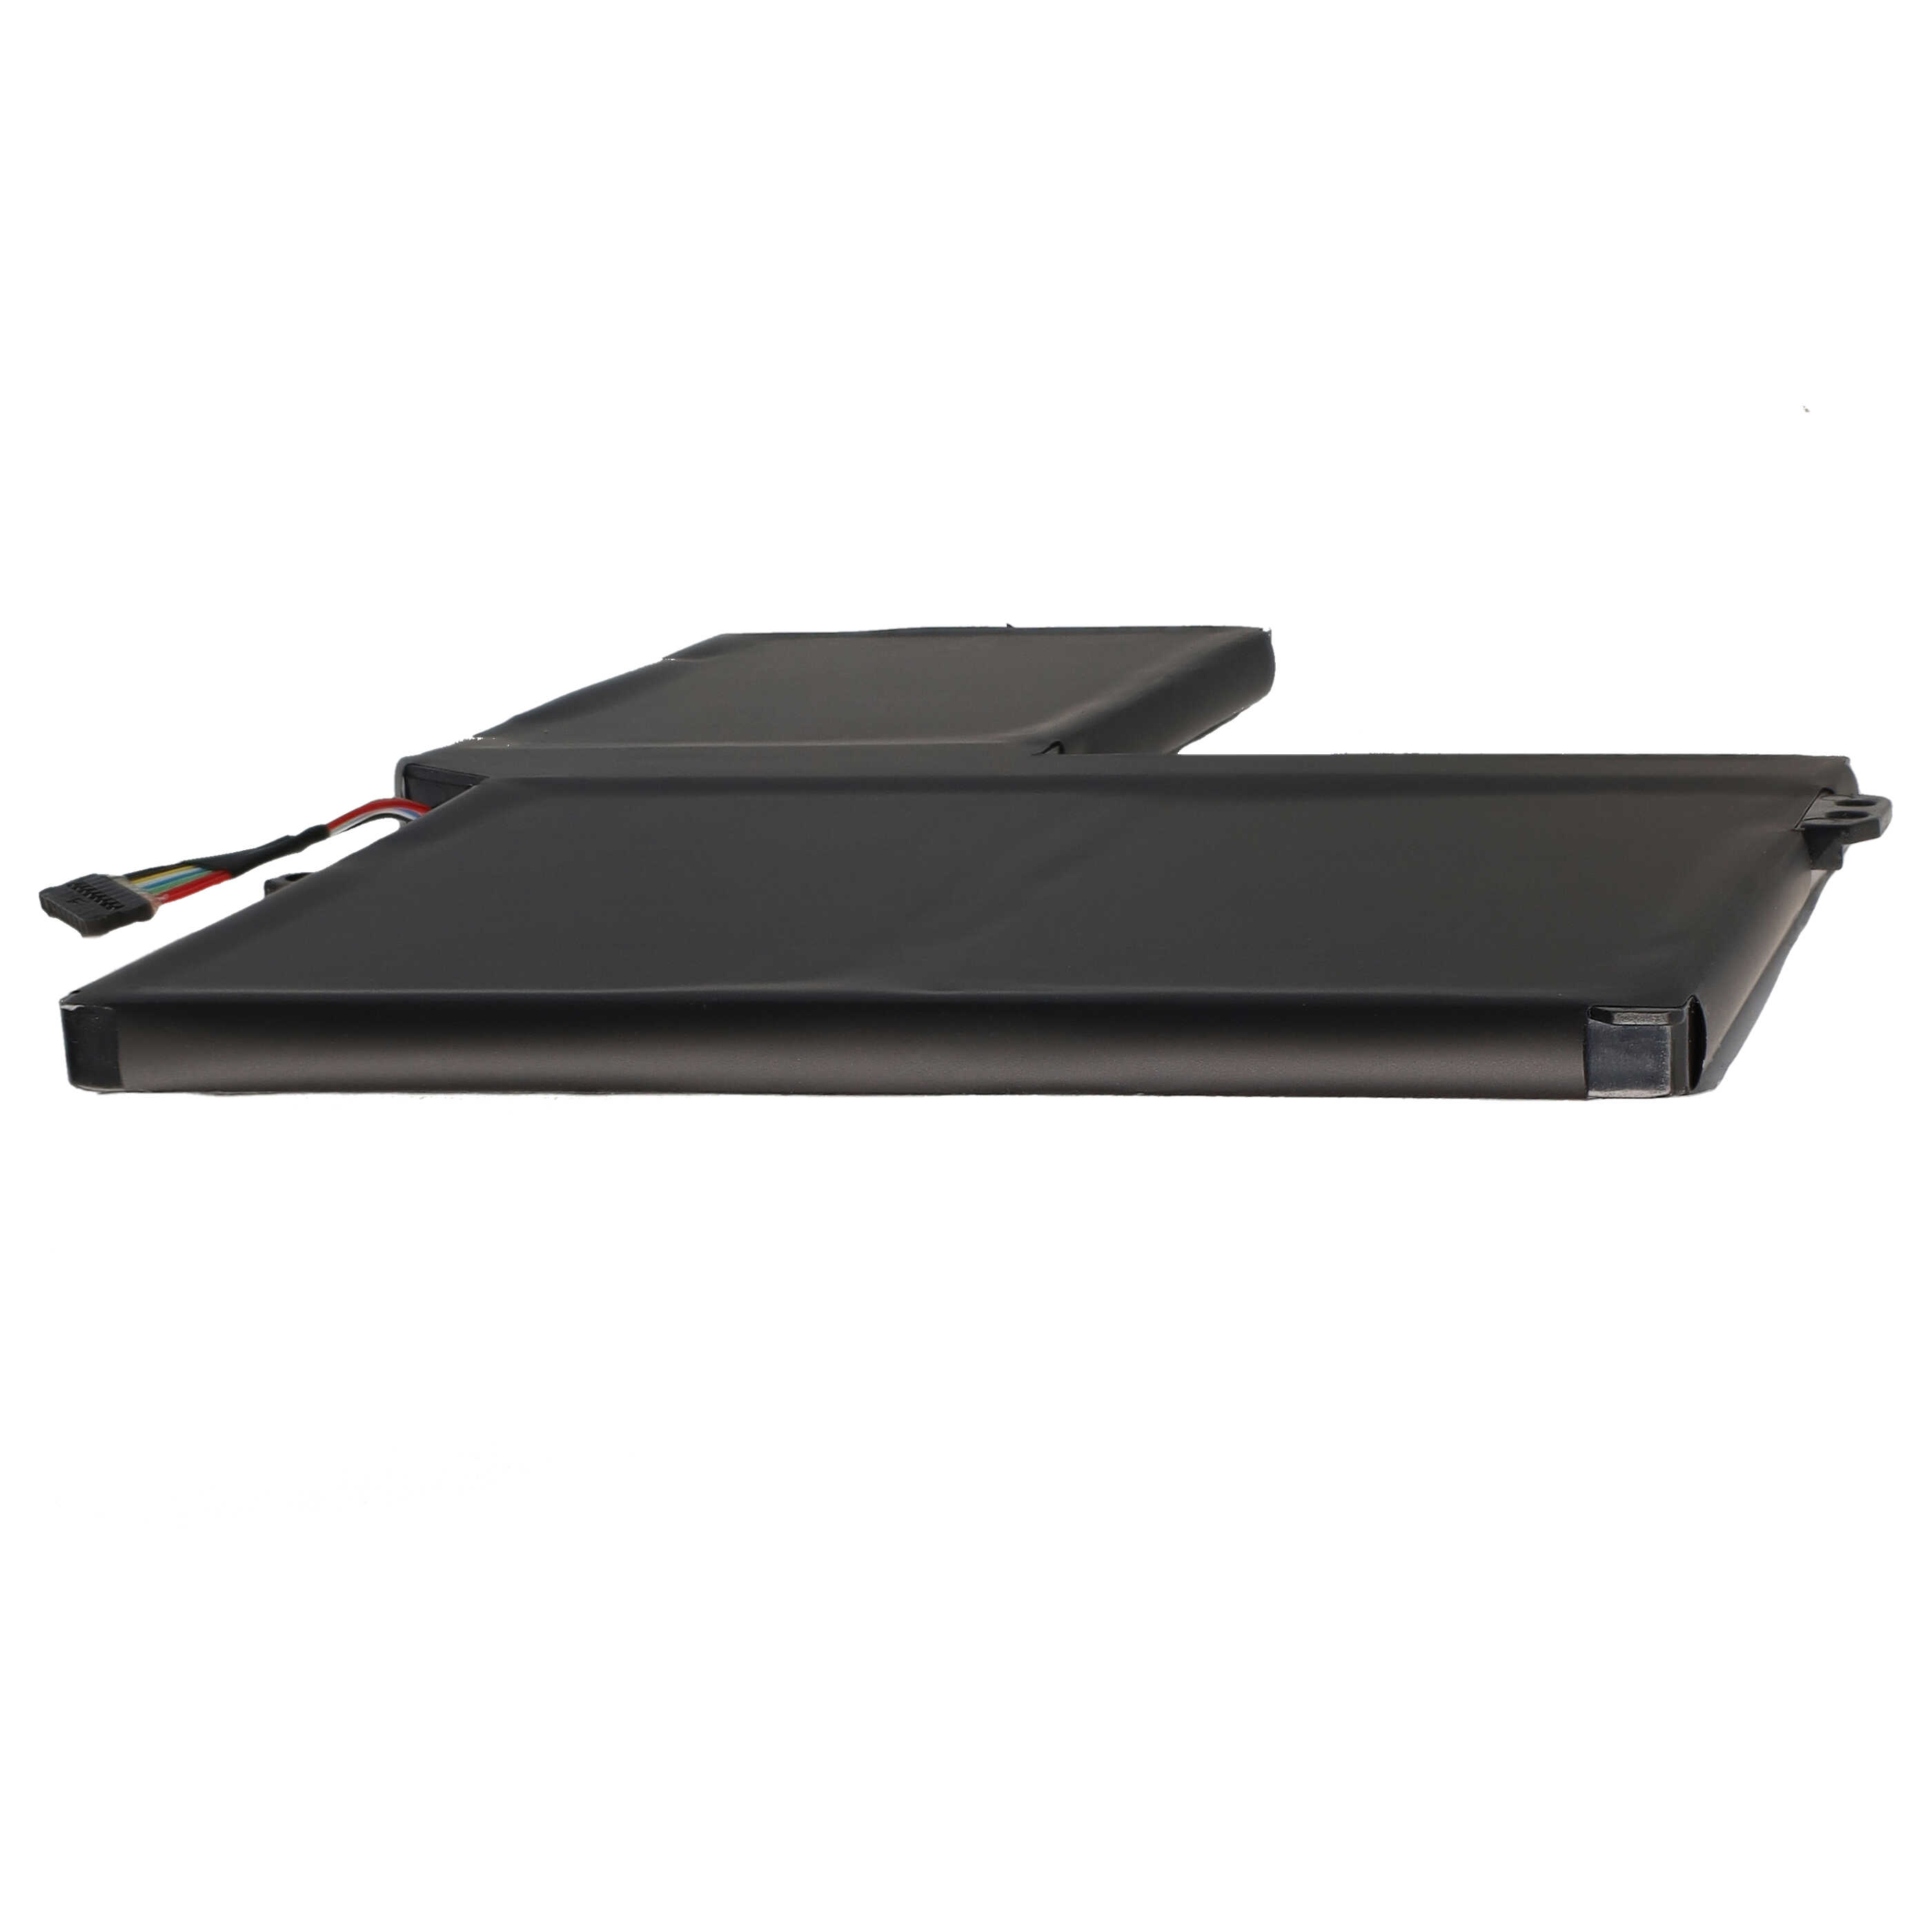 Notebook-Akku passend für Lenovo IdeaPad S540 15, S540-15iml, S540-15iml 81ng, S540-15iml 81ng-003k (81ng003km